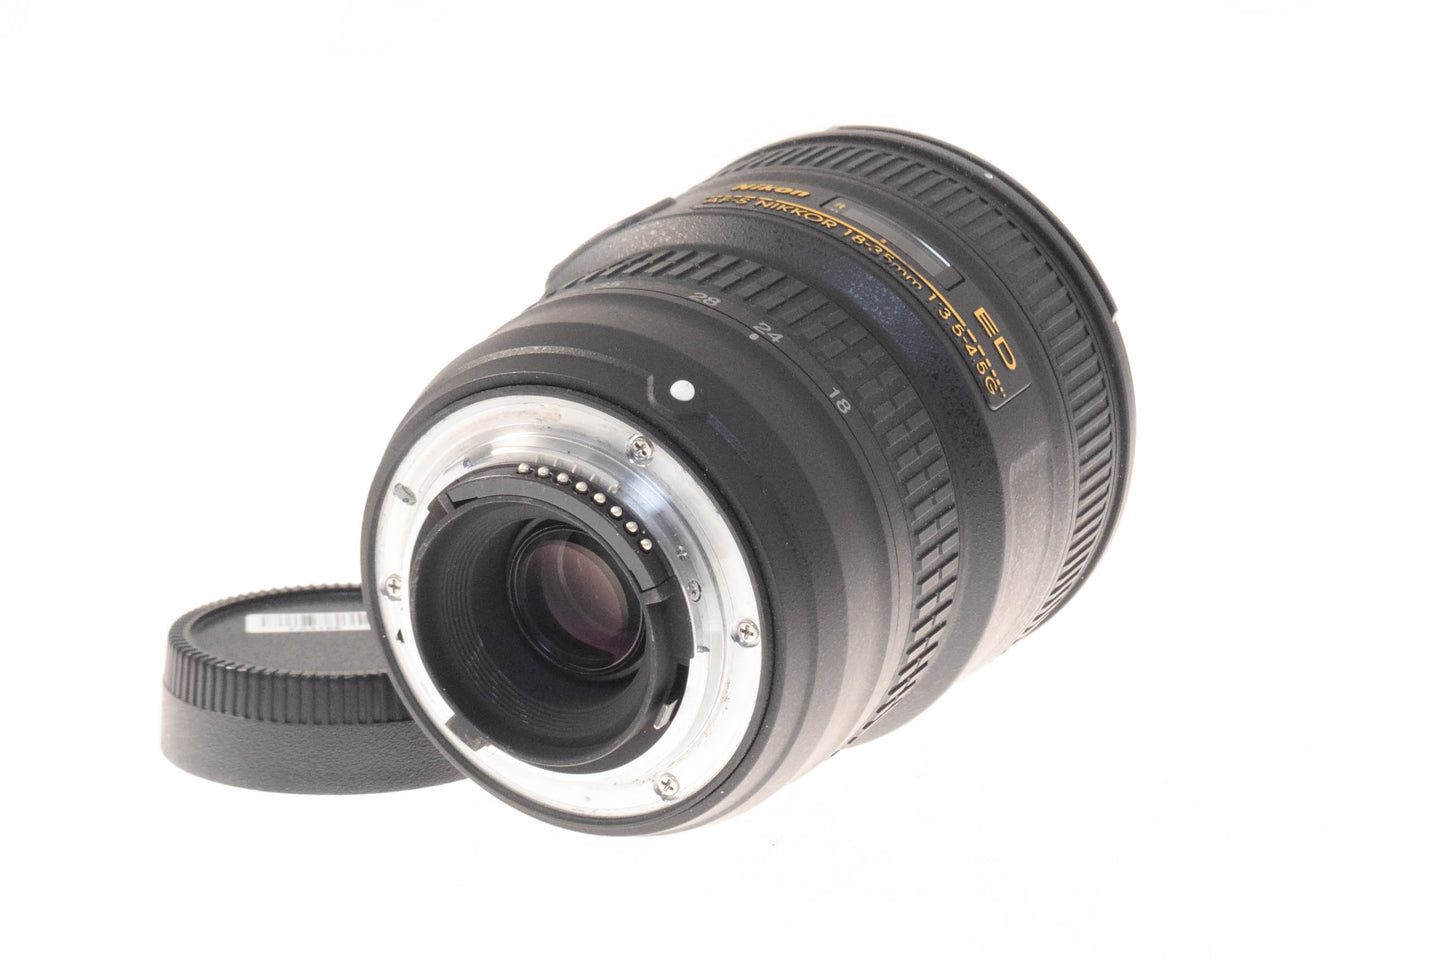 Nikon 18-35mm f3.5-4.5 AF-S Nikkor G ED